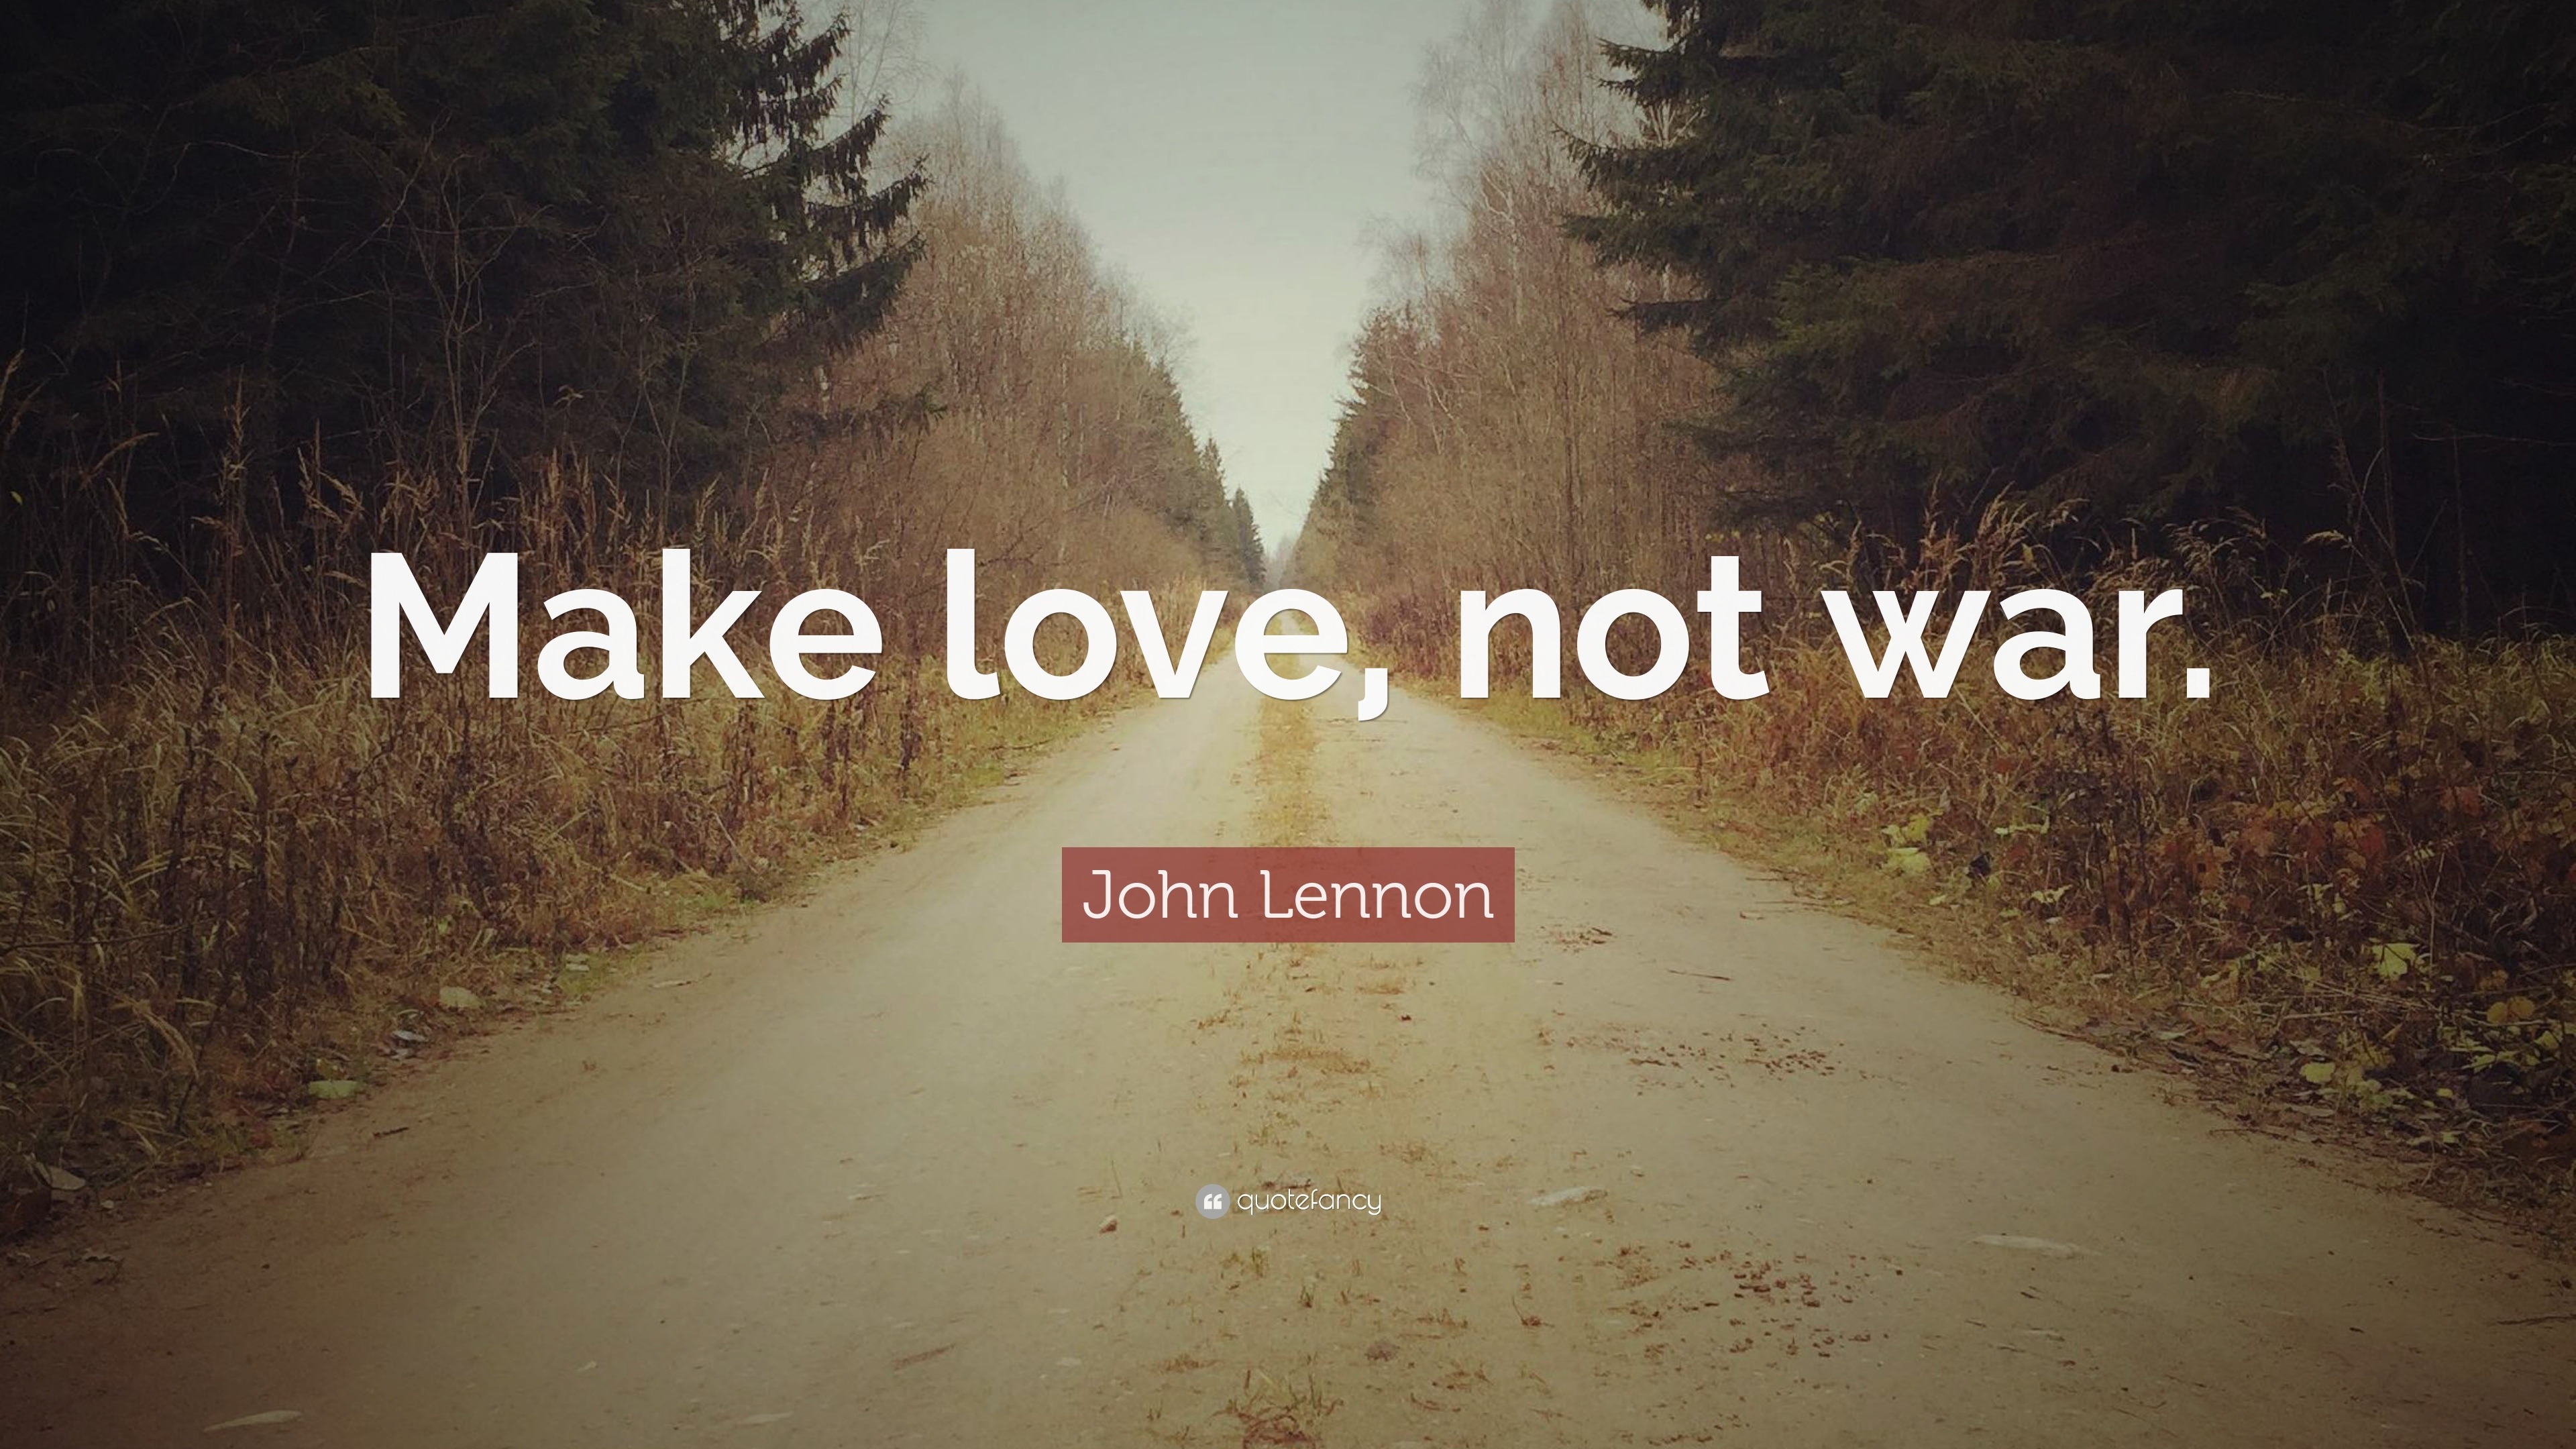 John Lennon Quote “Make love not war ”